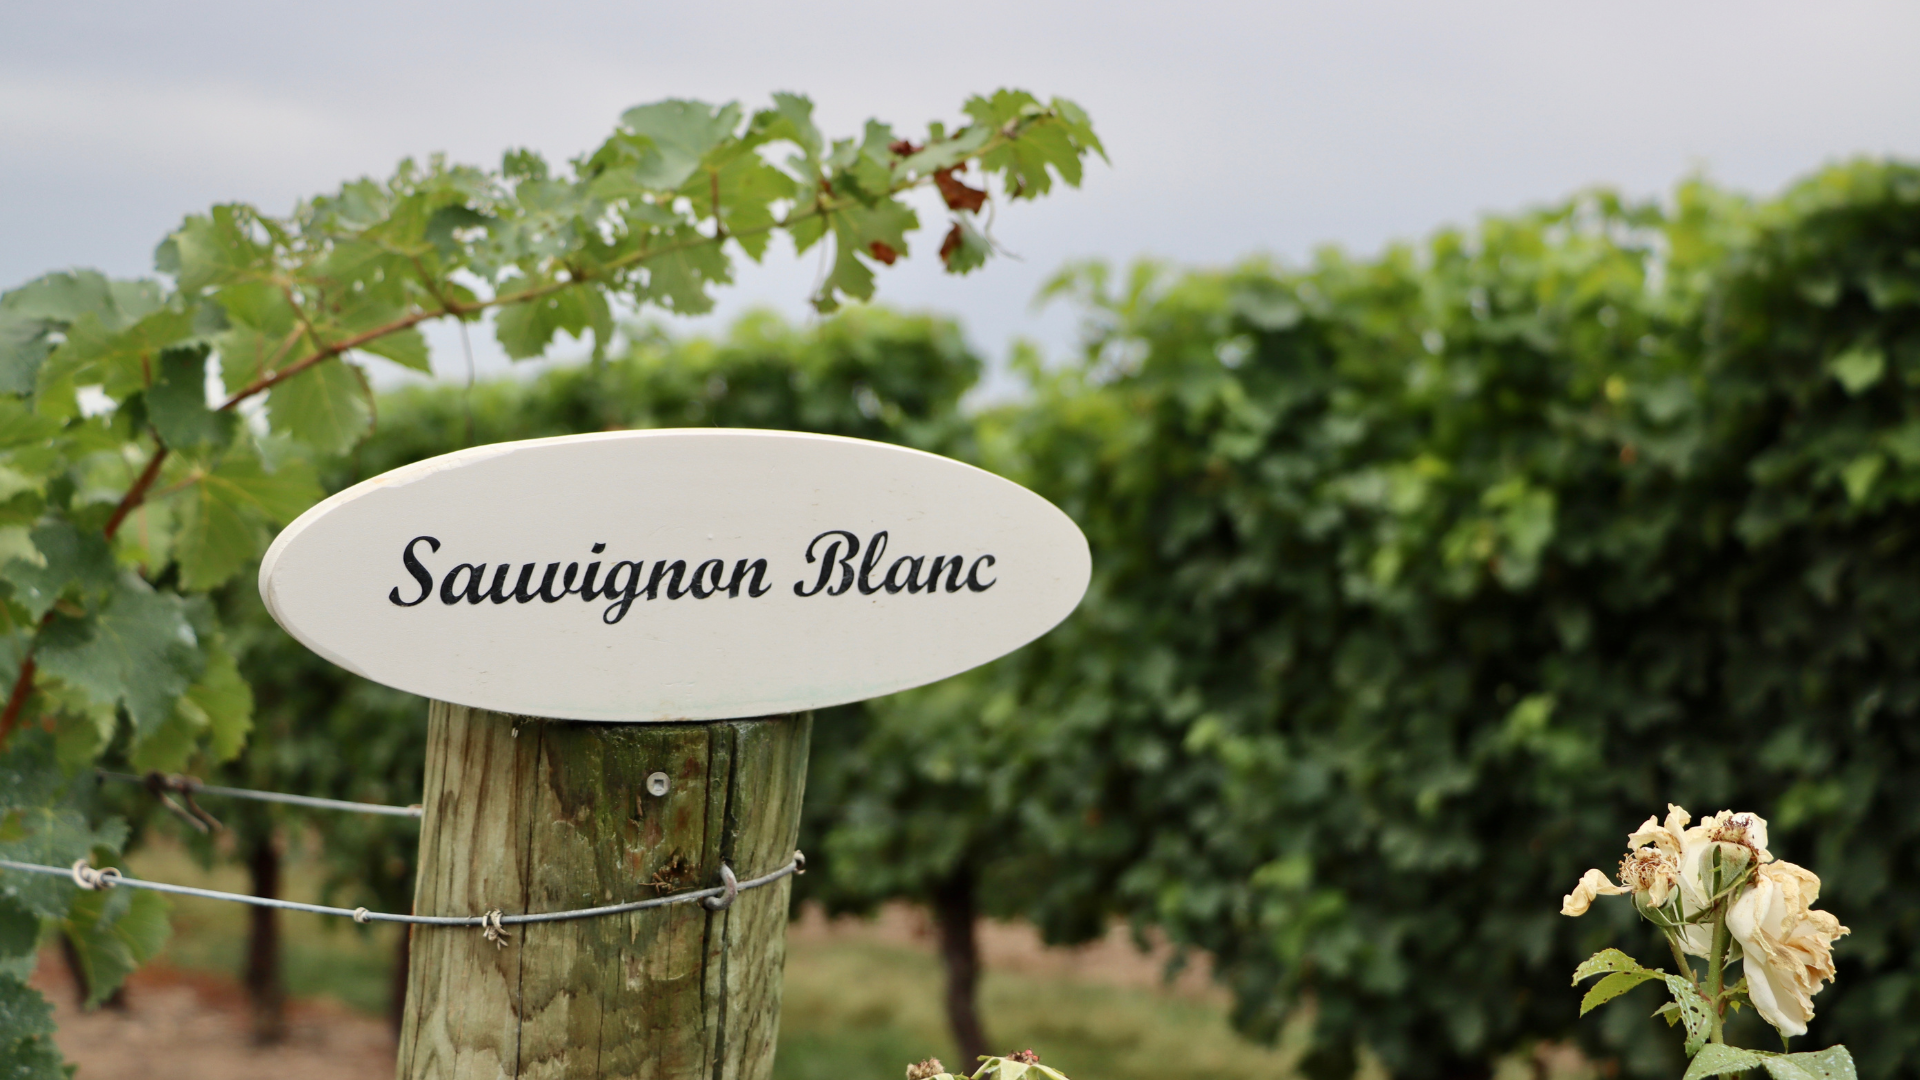 Image of Sauvignon Blanc vinaeyard